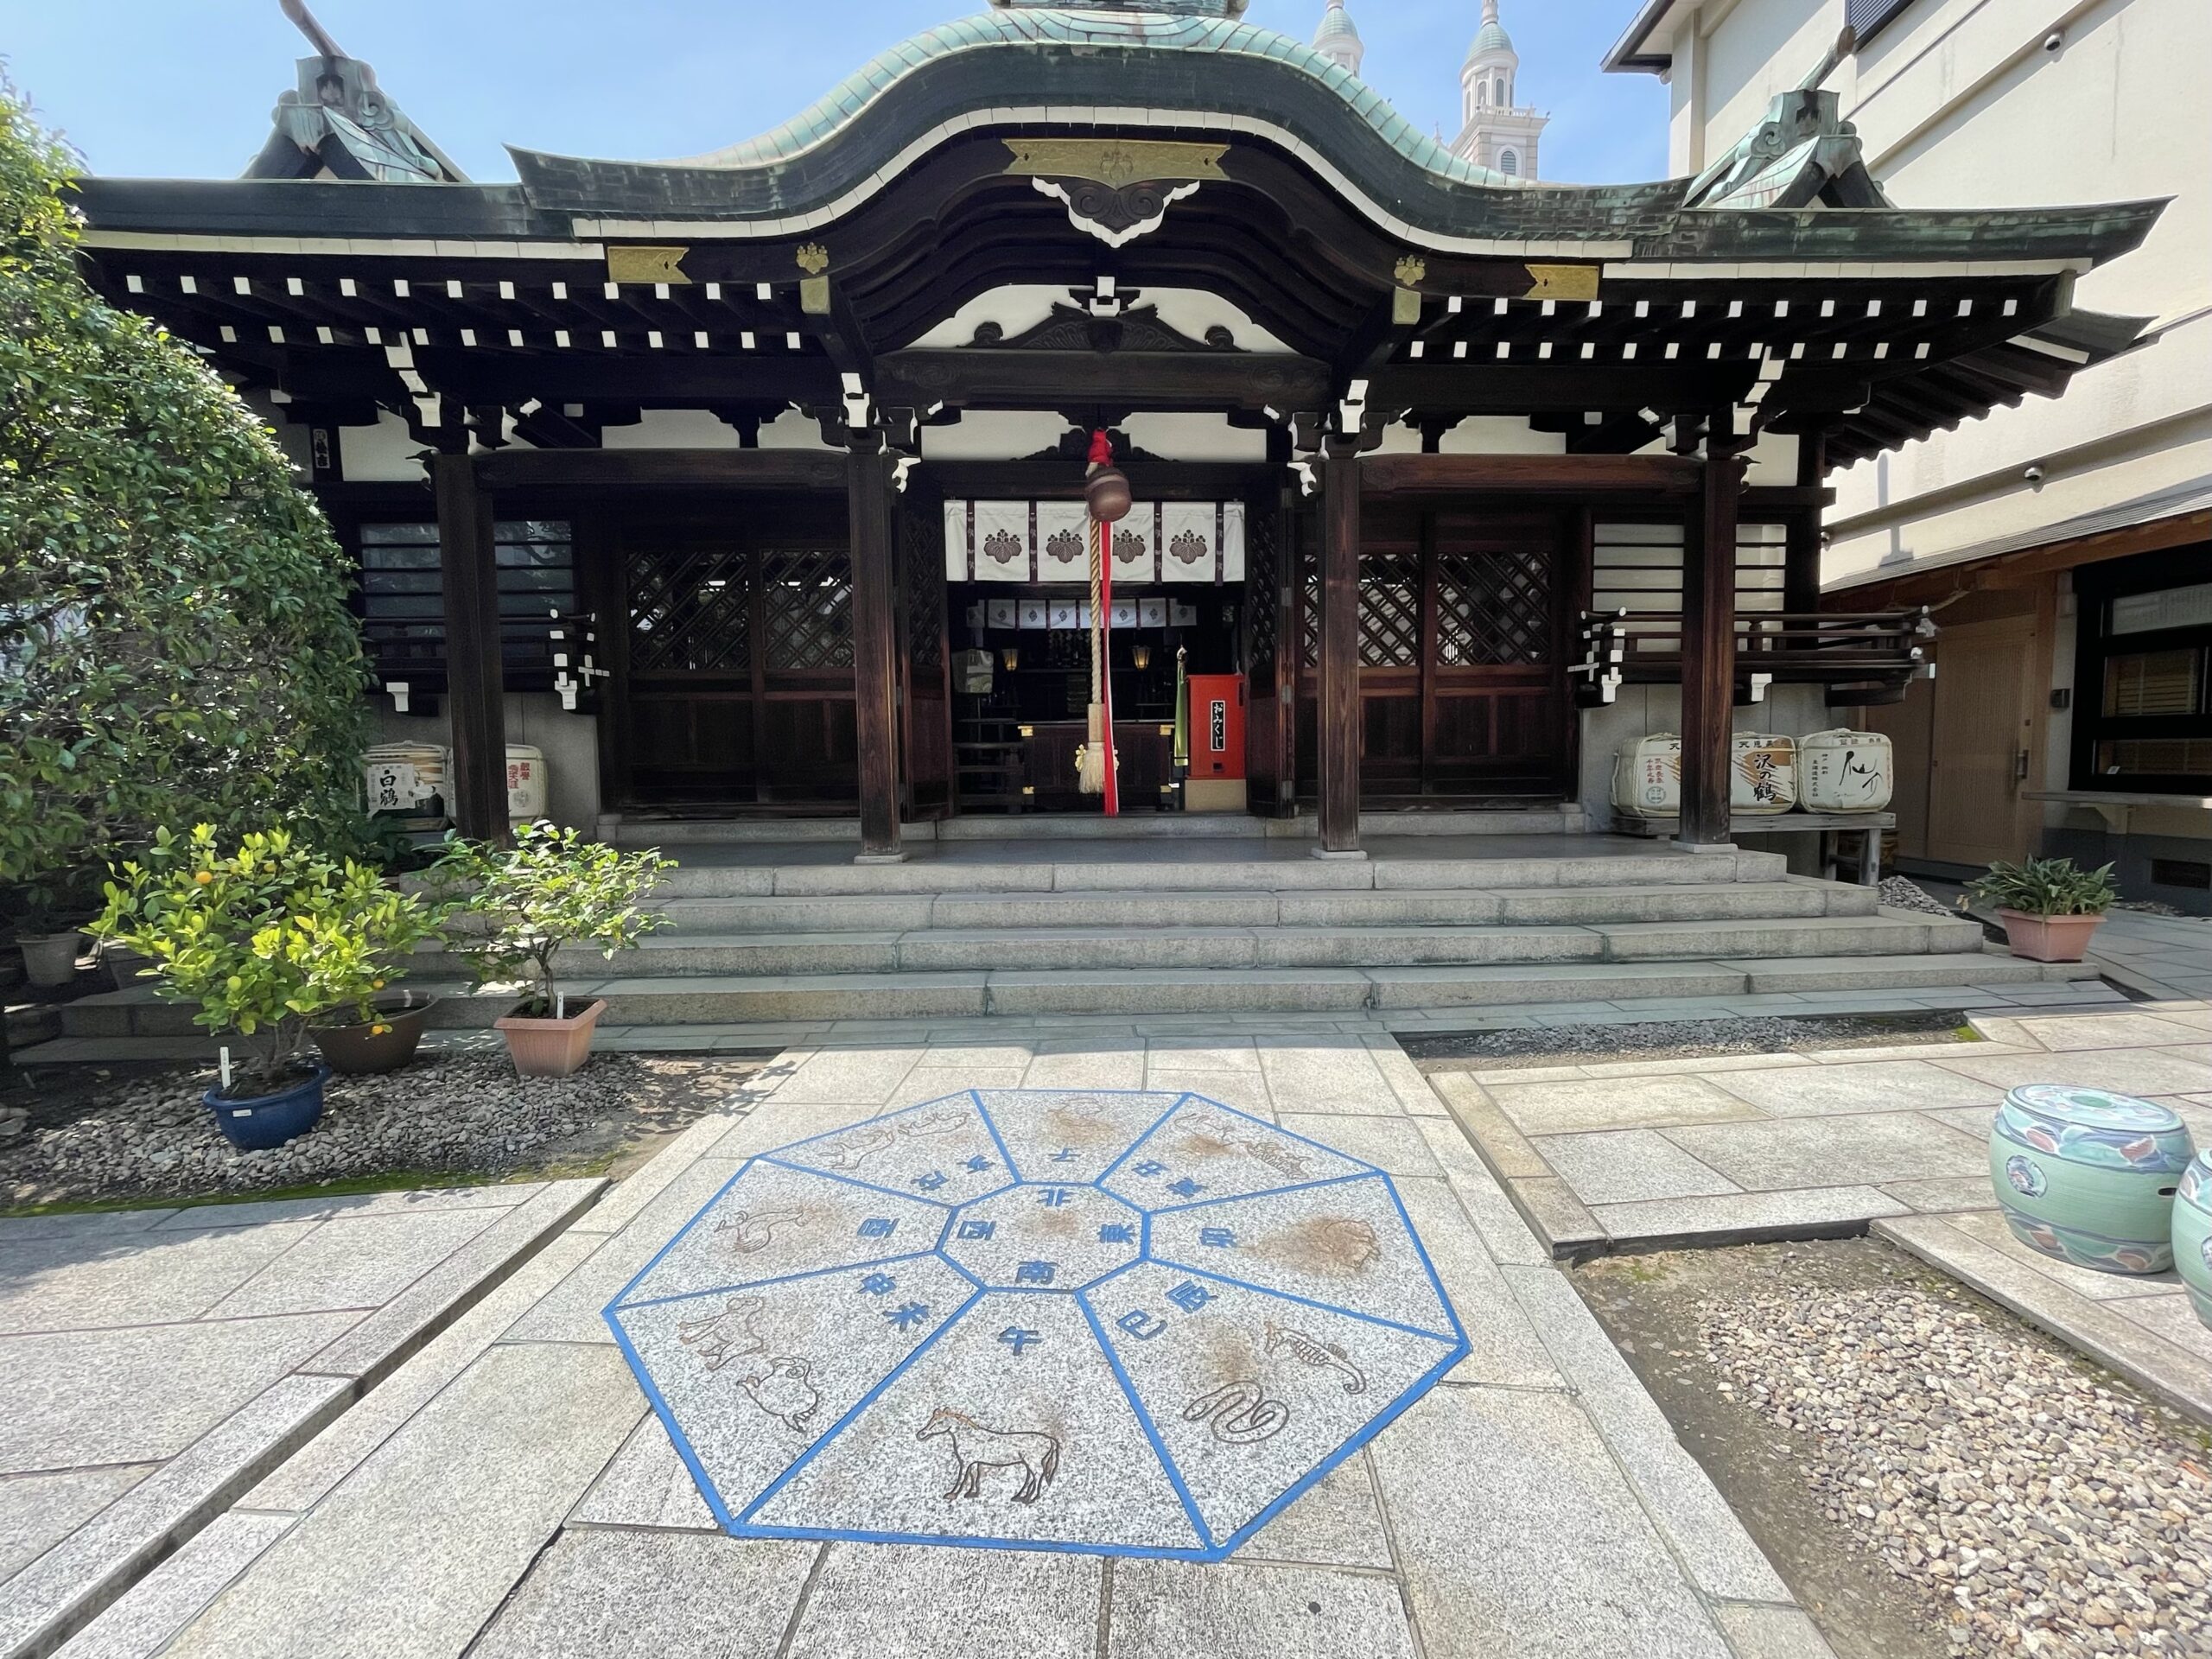 【旧居留地】『三宮神社』意外と神戸人も知らない人が多くてビックリ。世界中に日本の切腹を印象付ける事件が勃発